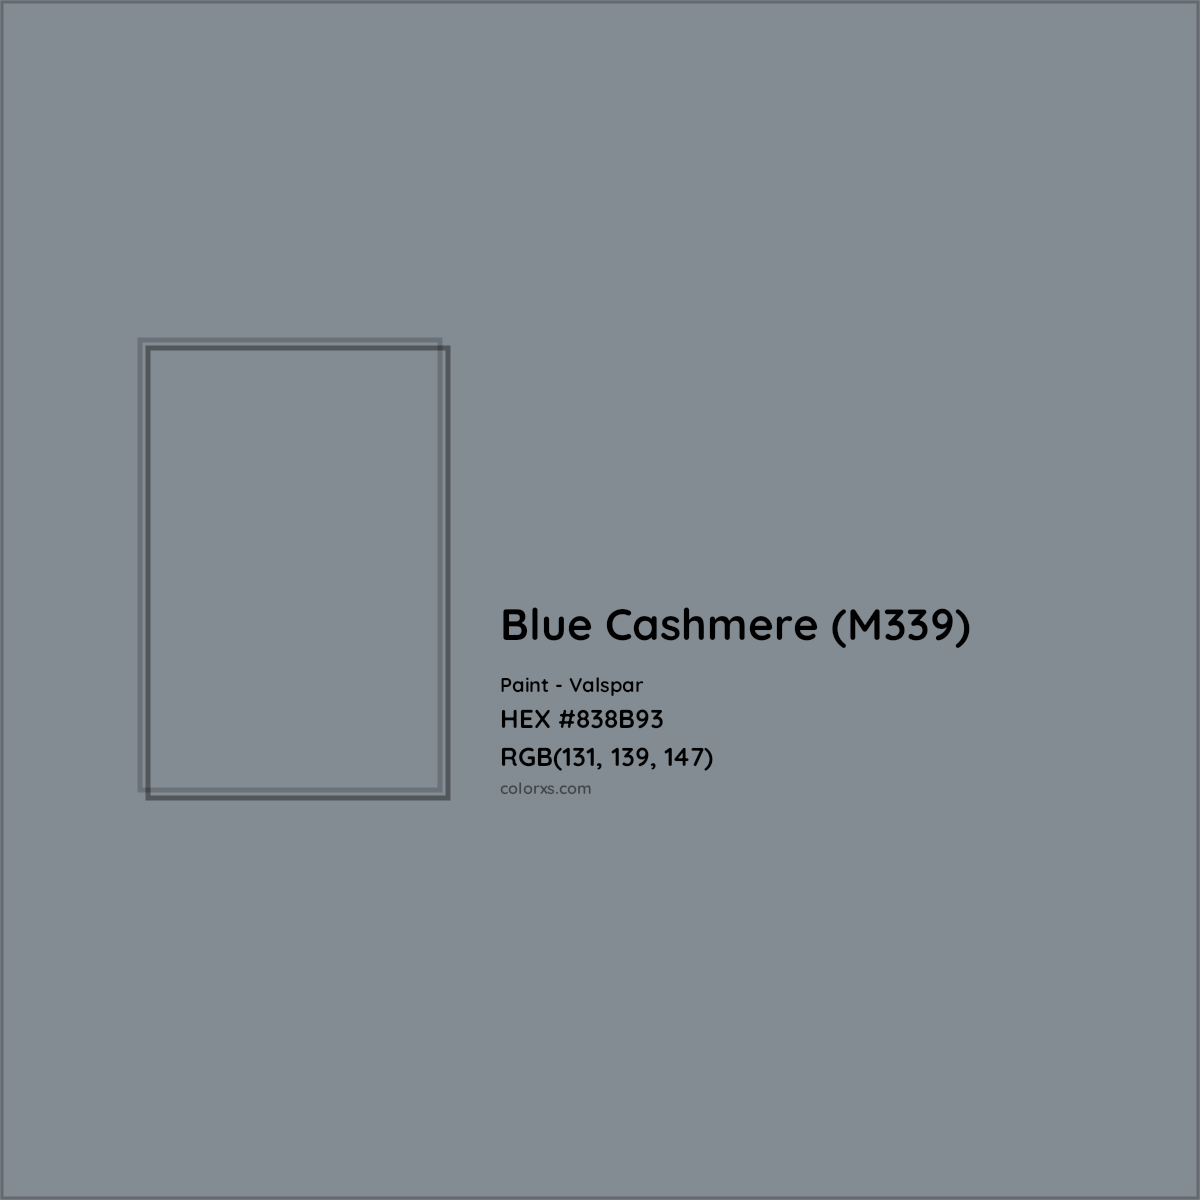 HEX #838B93 Blue Cashmere (M339) Paint Valspar - Color Code